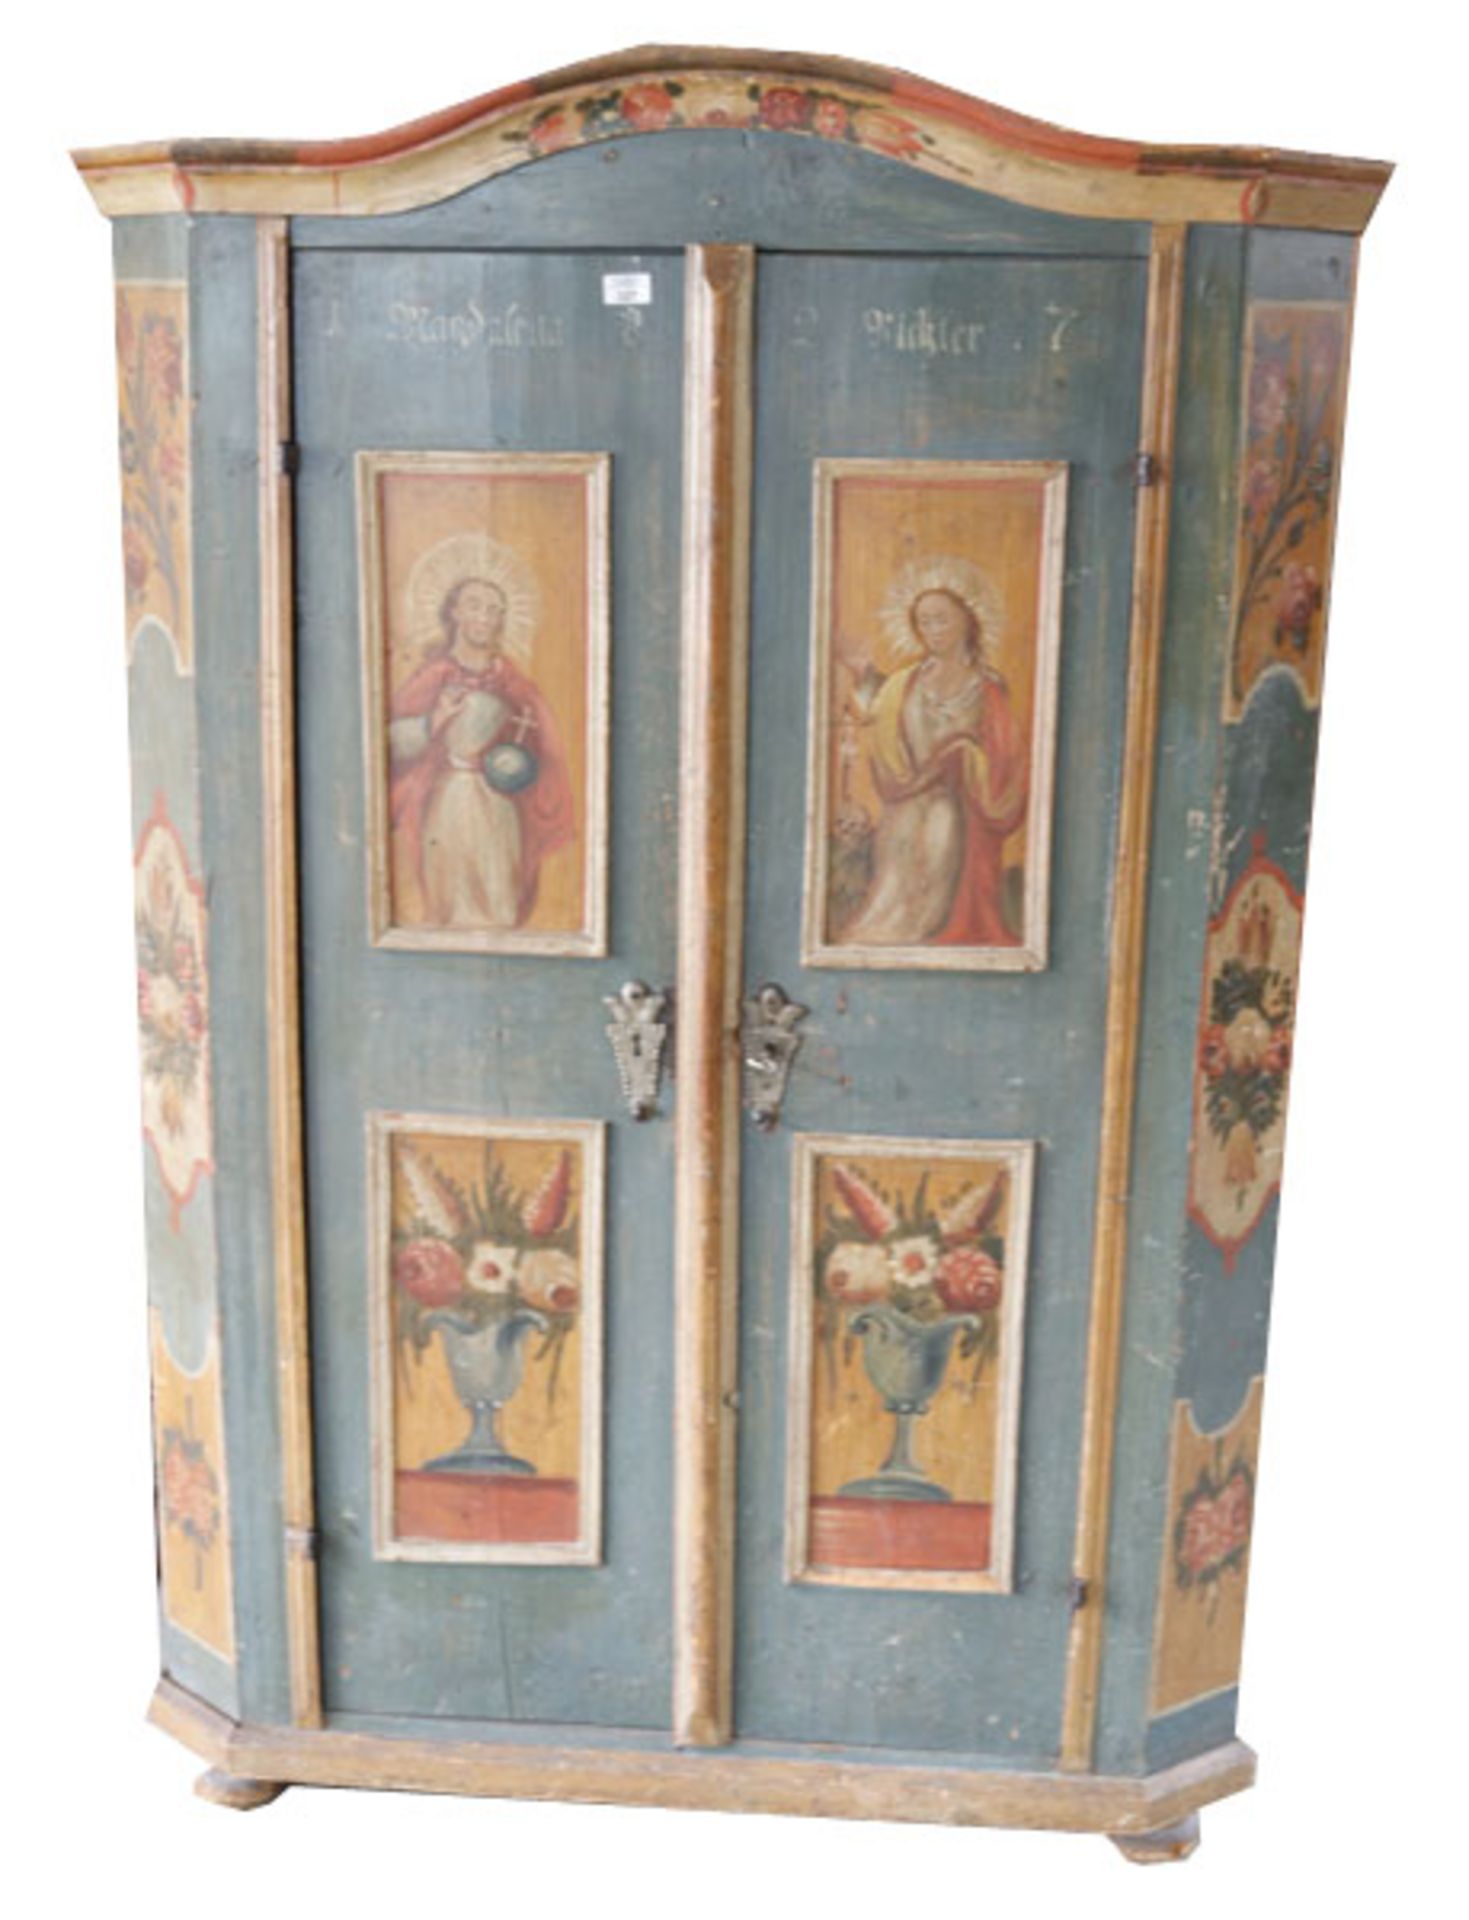 Bauernschrank, Korpus mit 2 Türen, blau mit bunter Blumenmalerei, Maria und Jesus, datiert 1827,